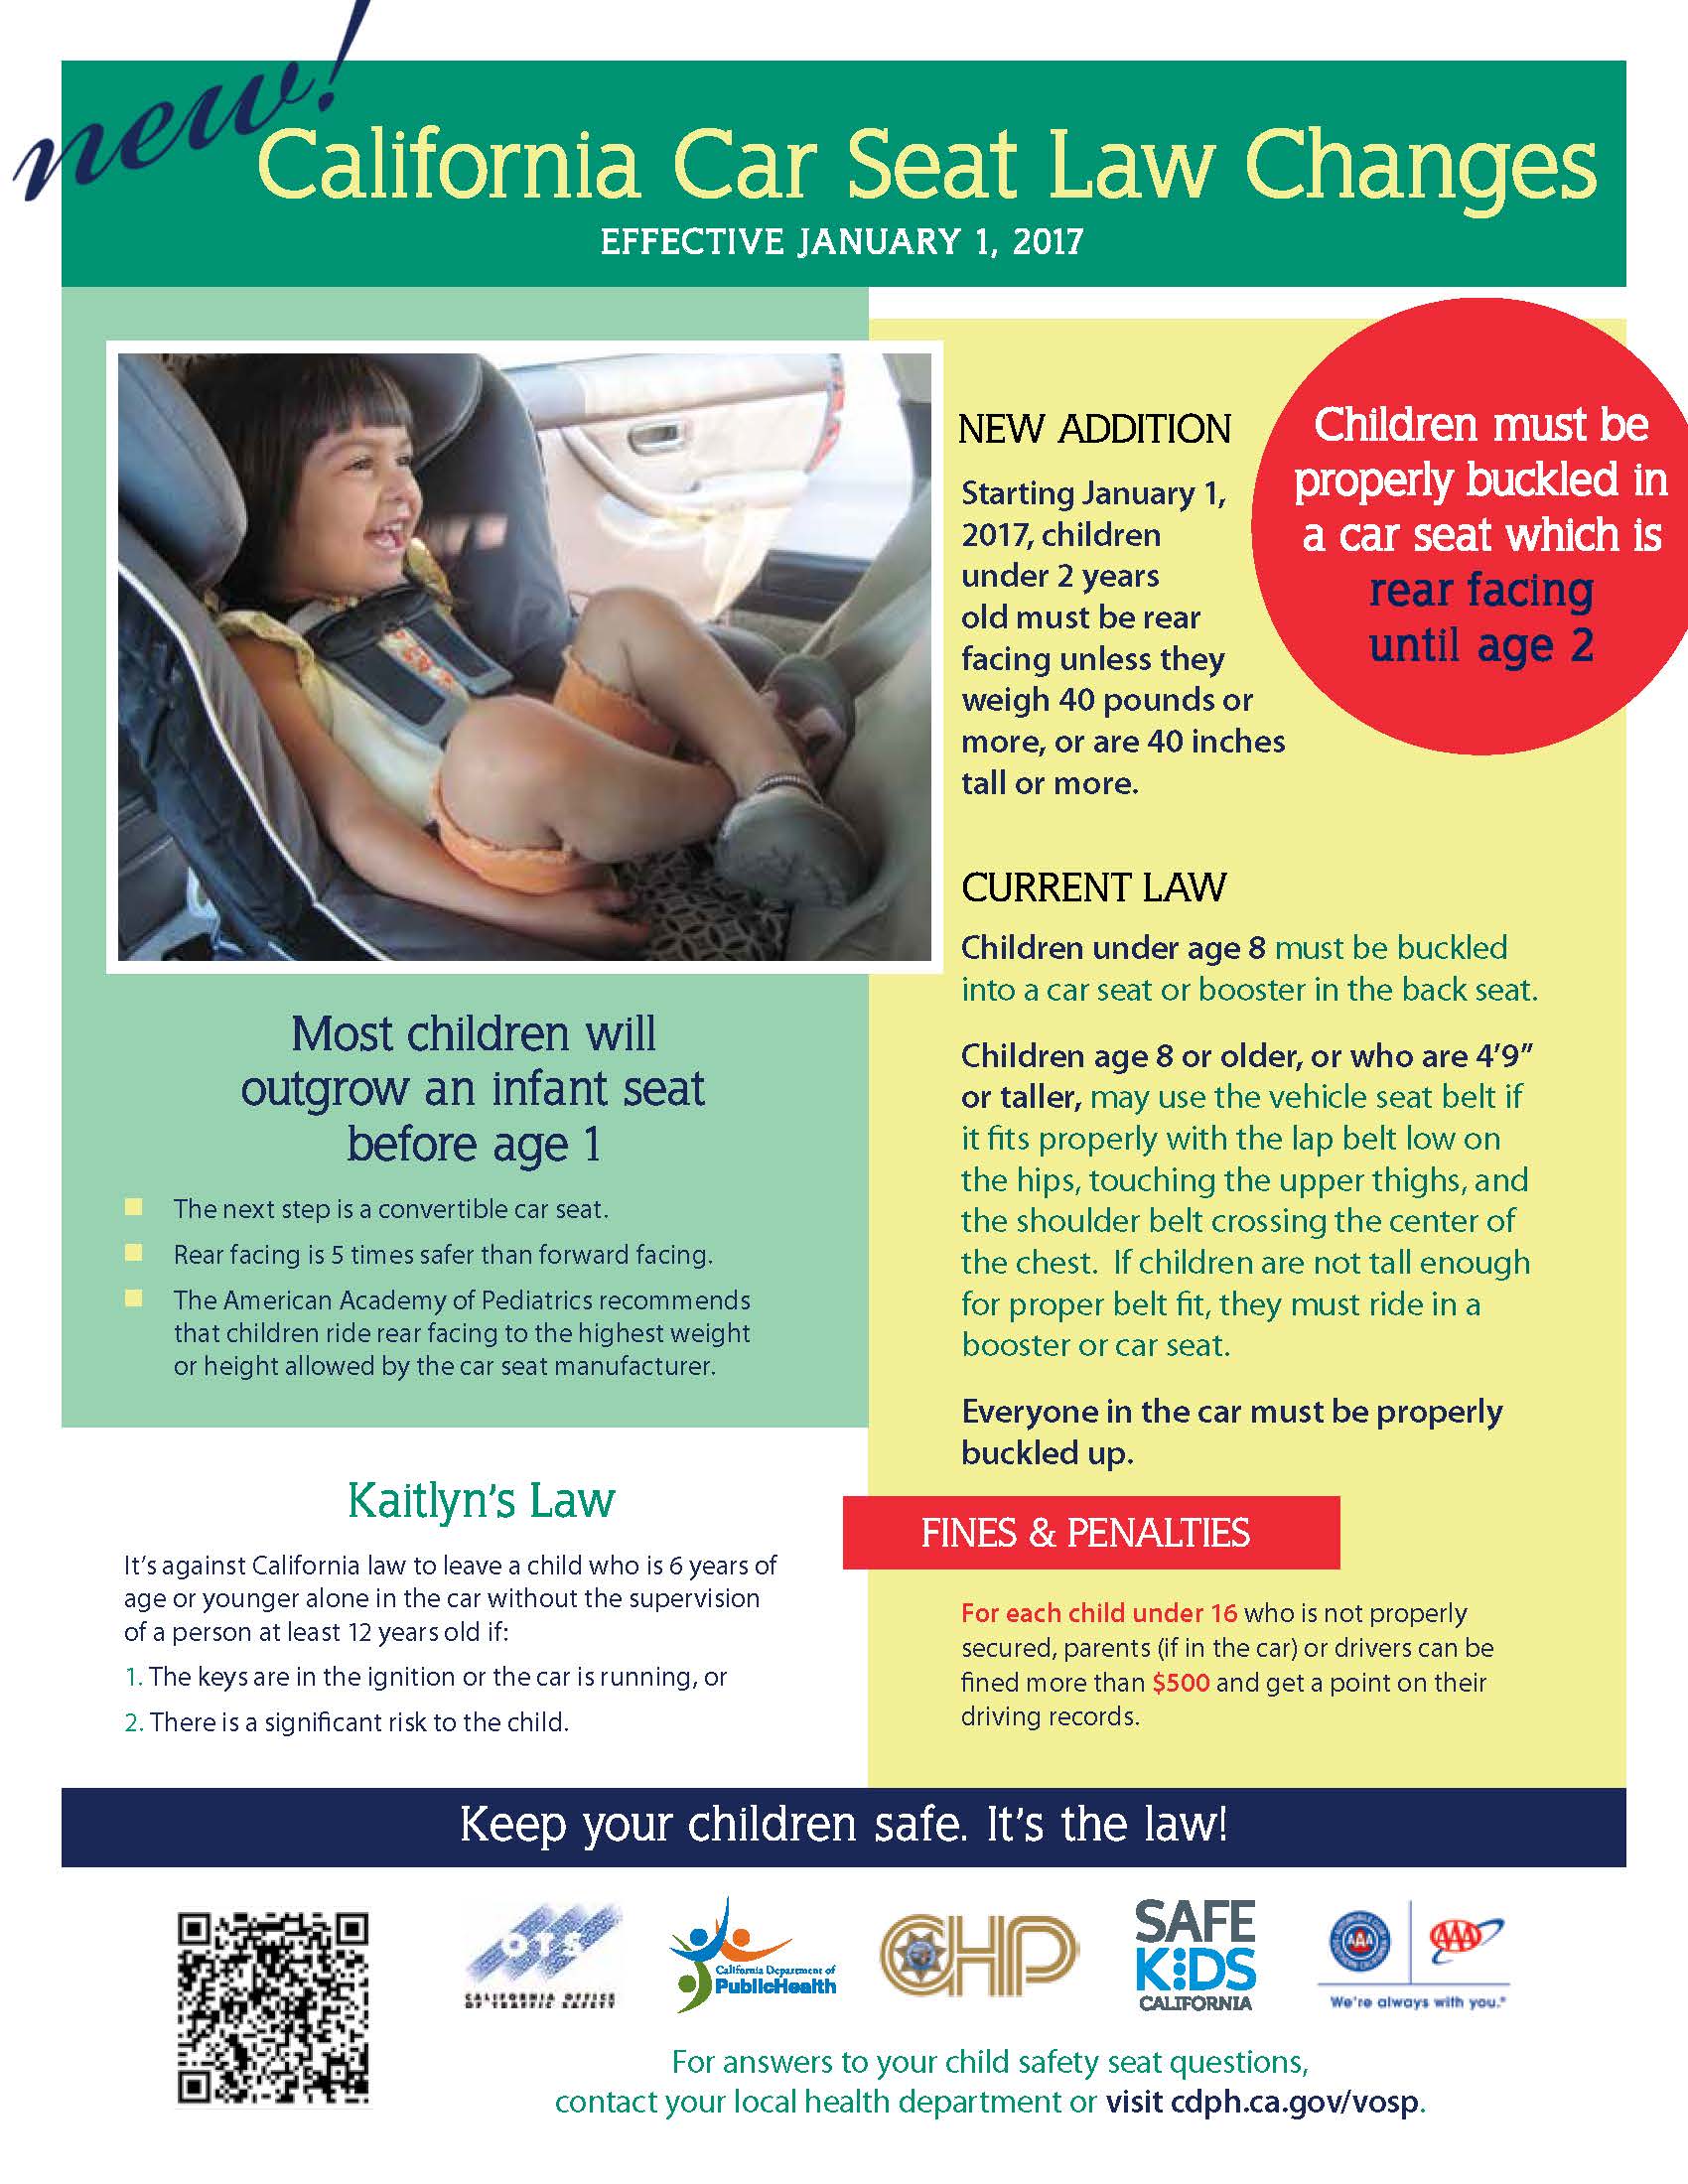 California Car Seat Laws